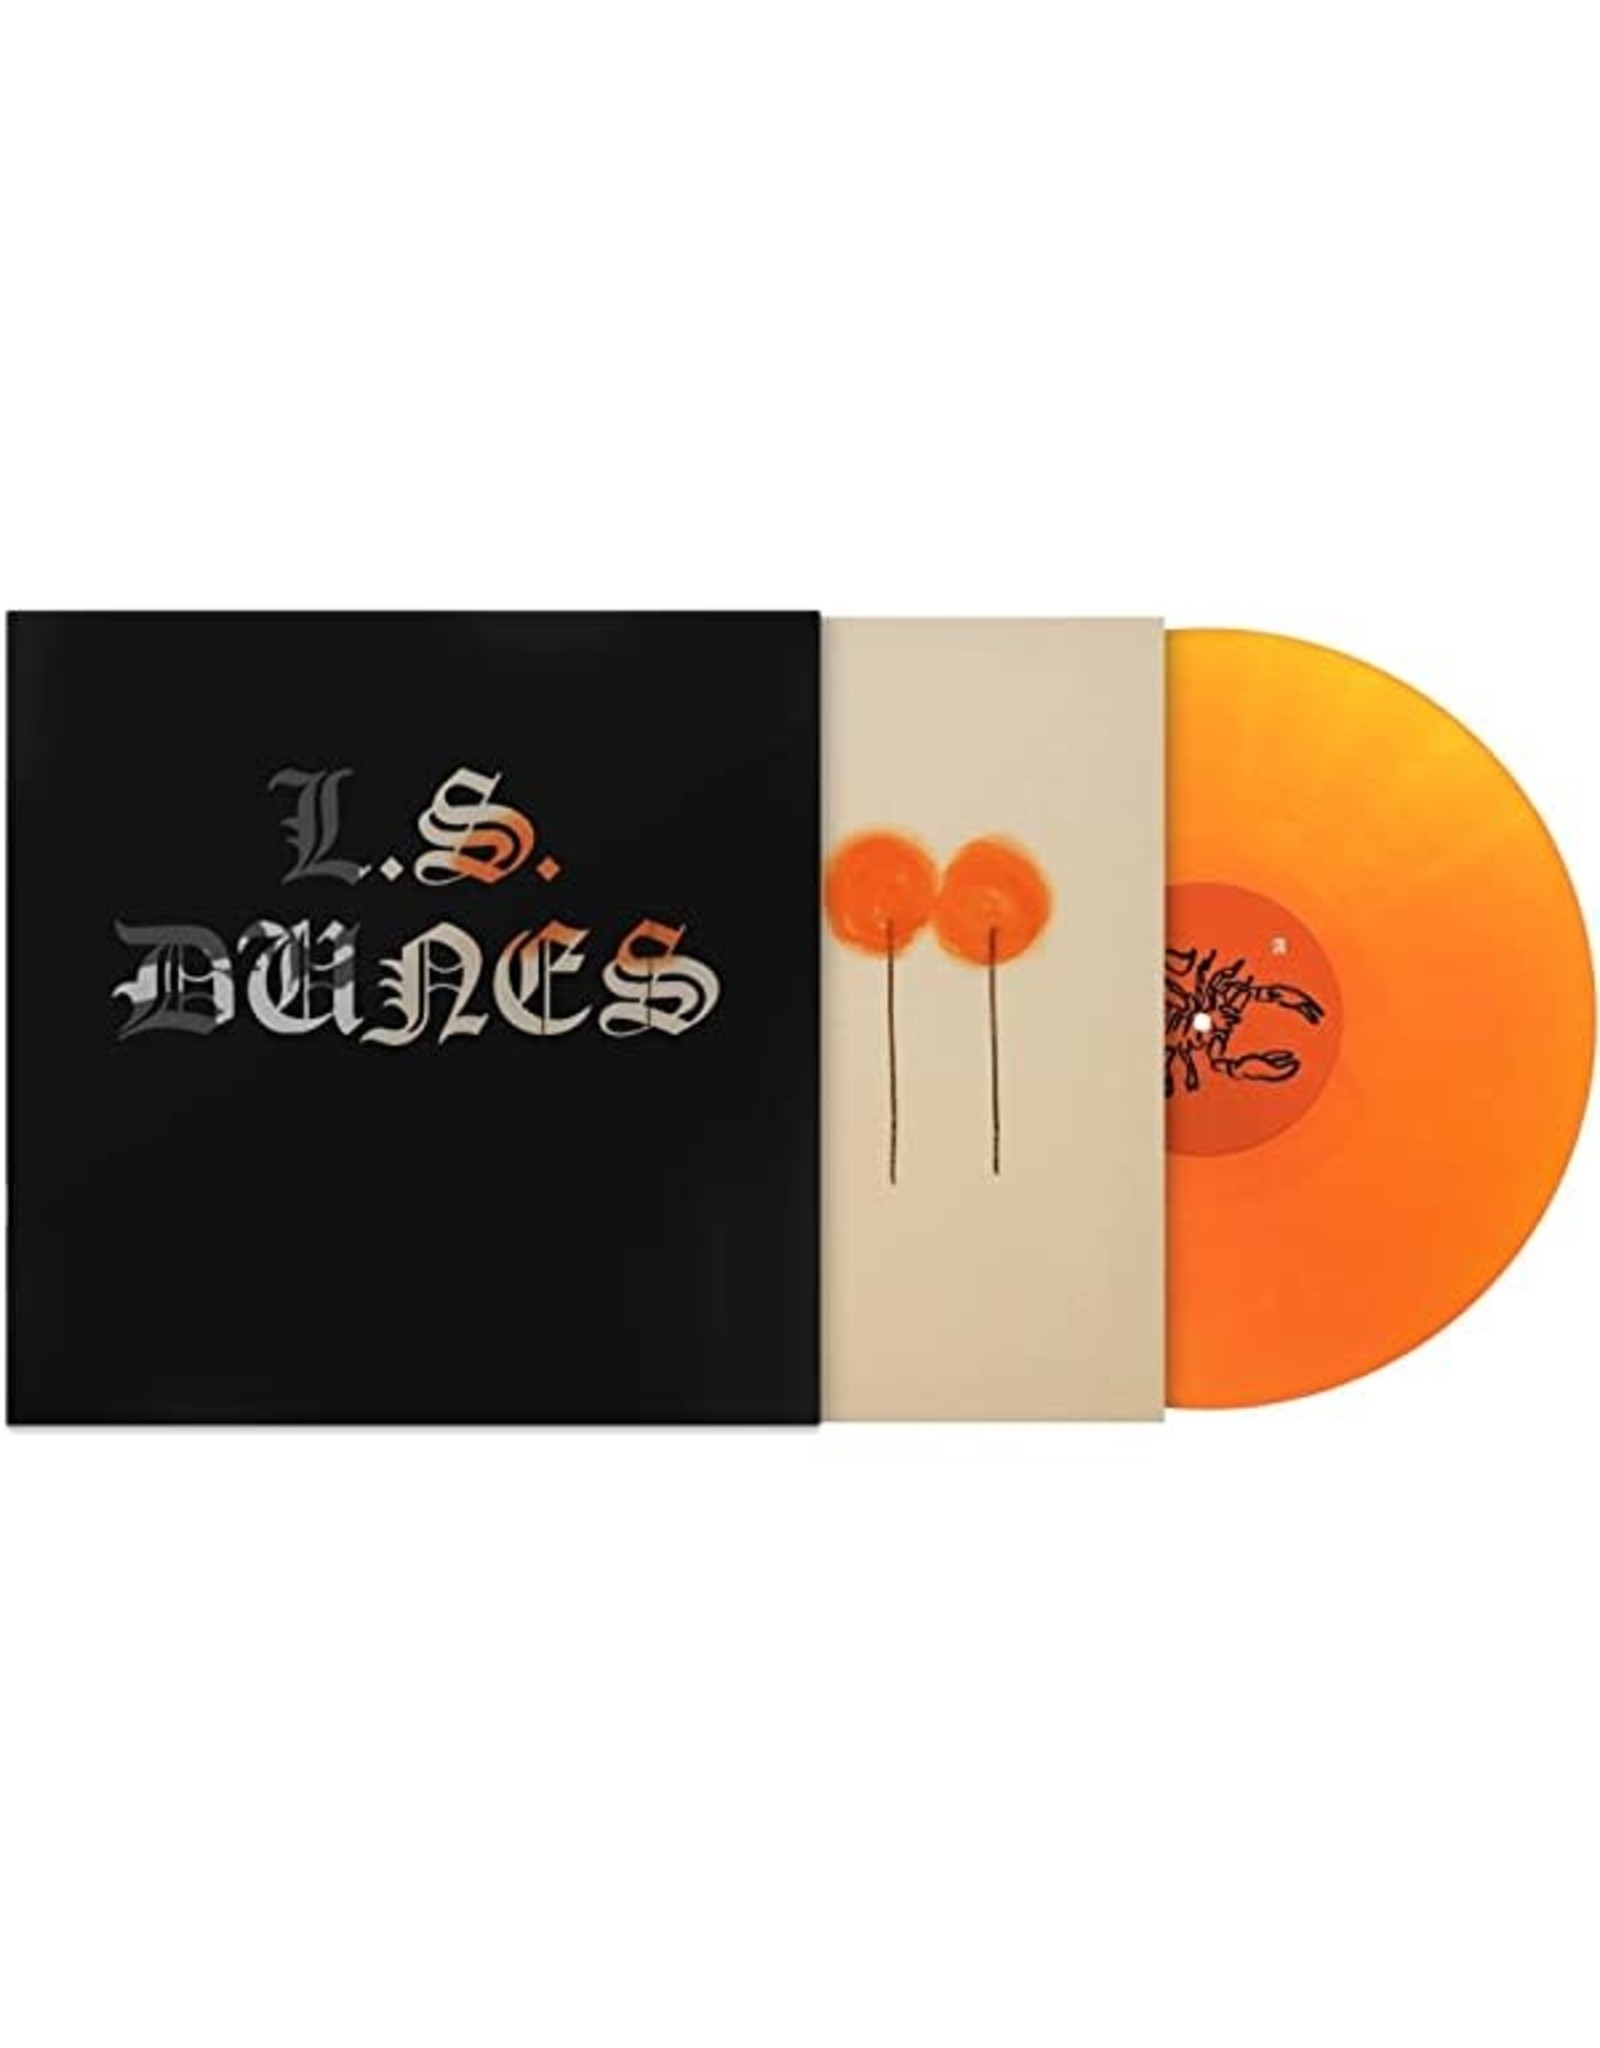 L.S. Dunes - Past Lives LP (orange crush)